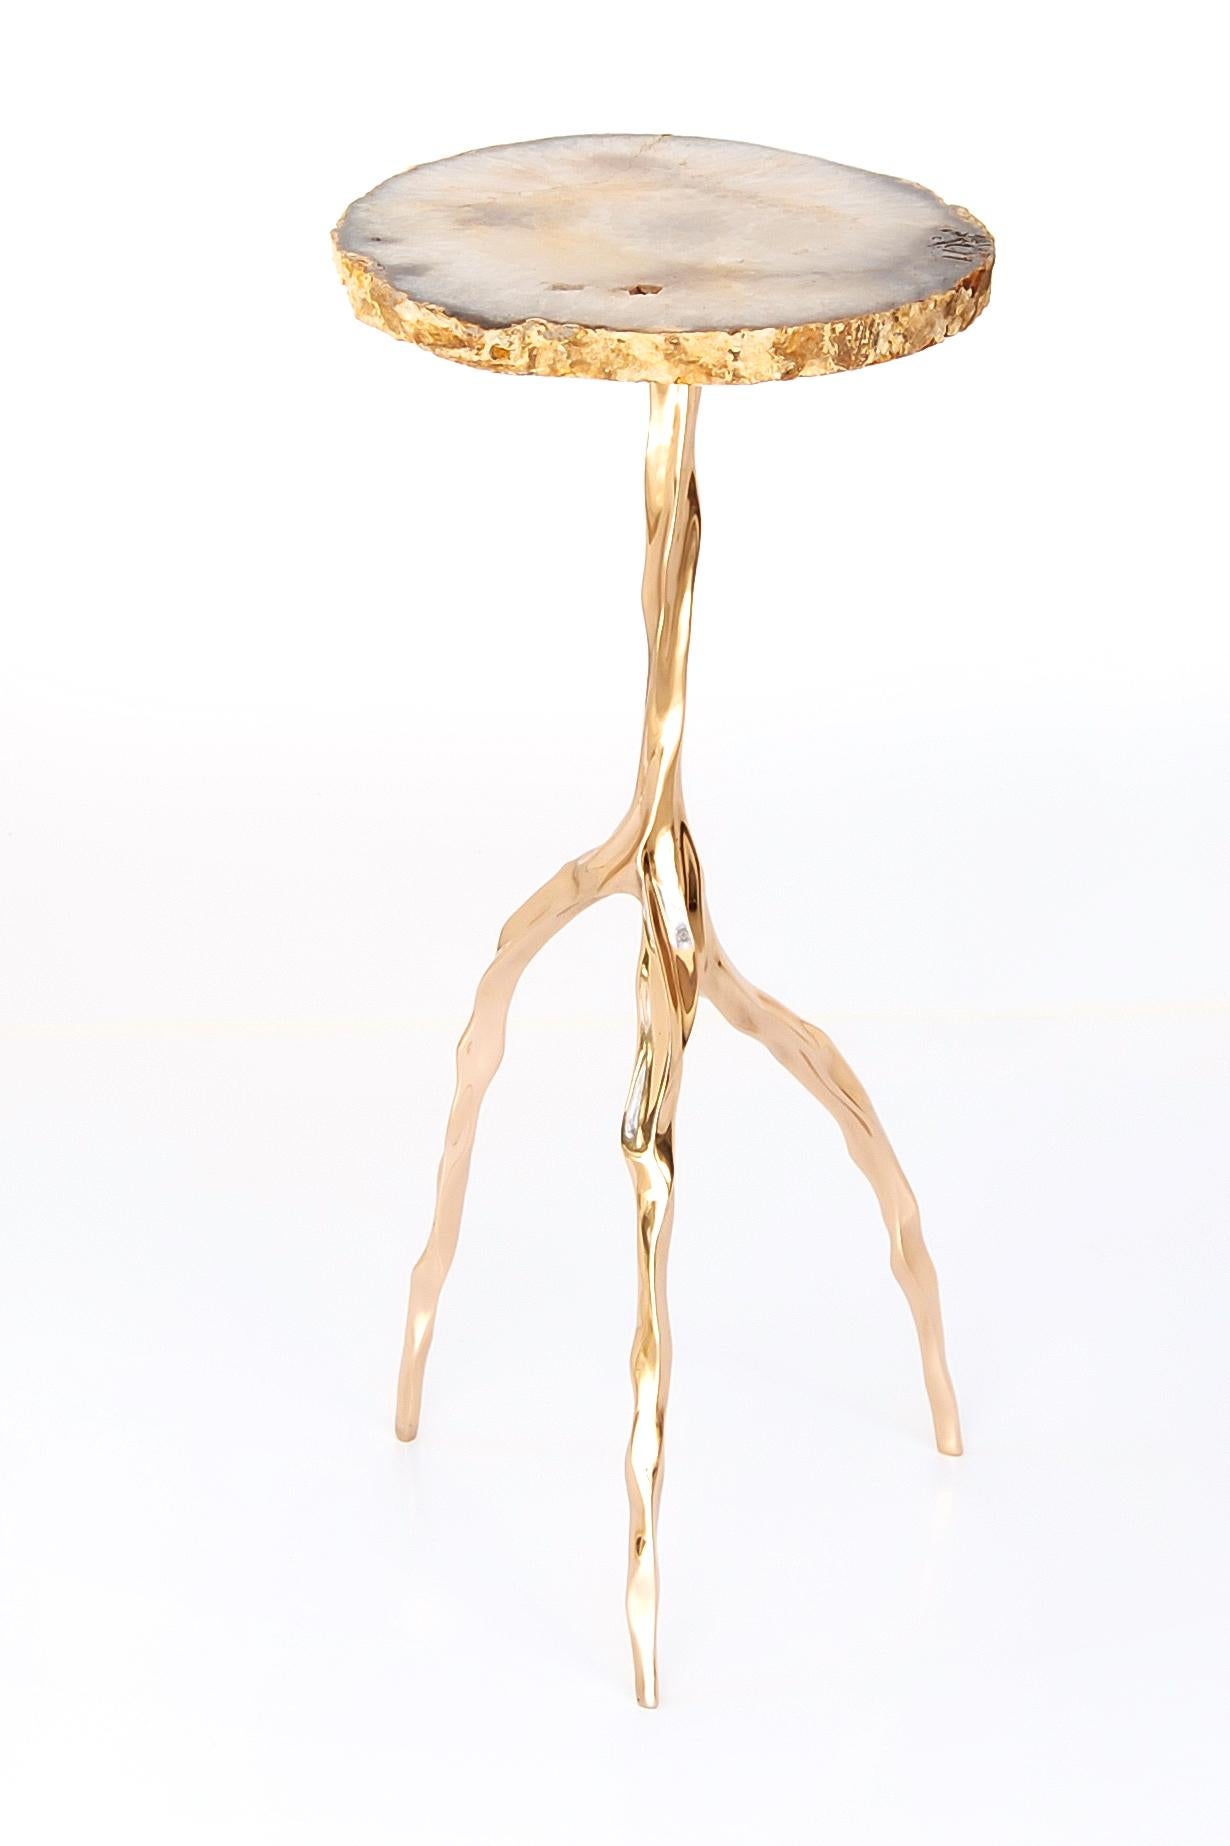 Table à boire Nina avec plateau en agate de Fakasaka Design
Dimensions : L 30 cm, P 30 cm, H 62 cm.
Matériaux : base en bronze poli, plateau en agate.
 
Disponible également dans différents matériaux de plateau de table :
Marbre Nero Marquina